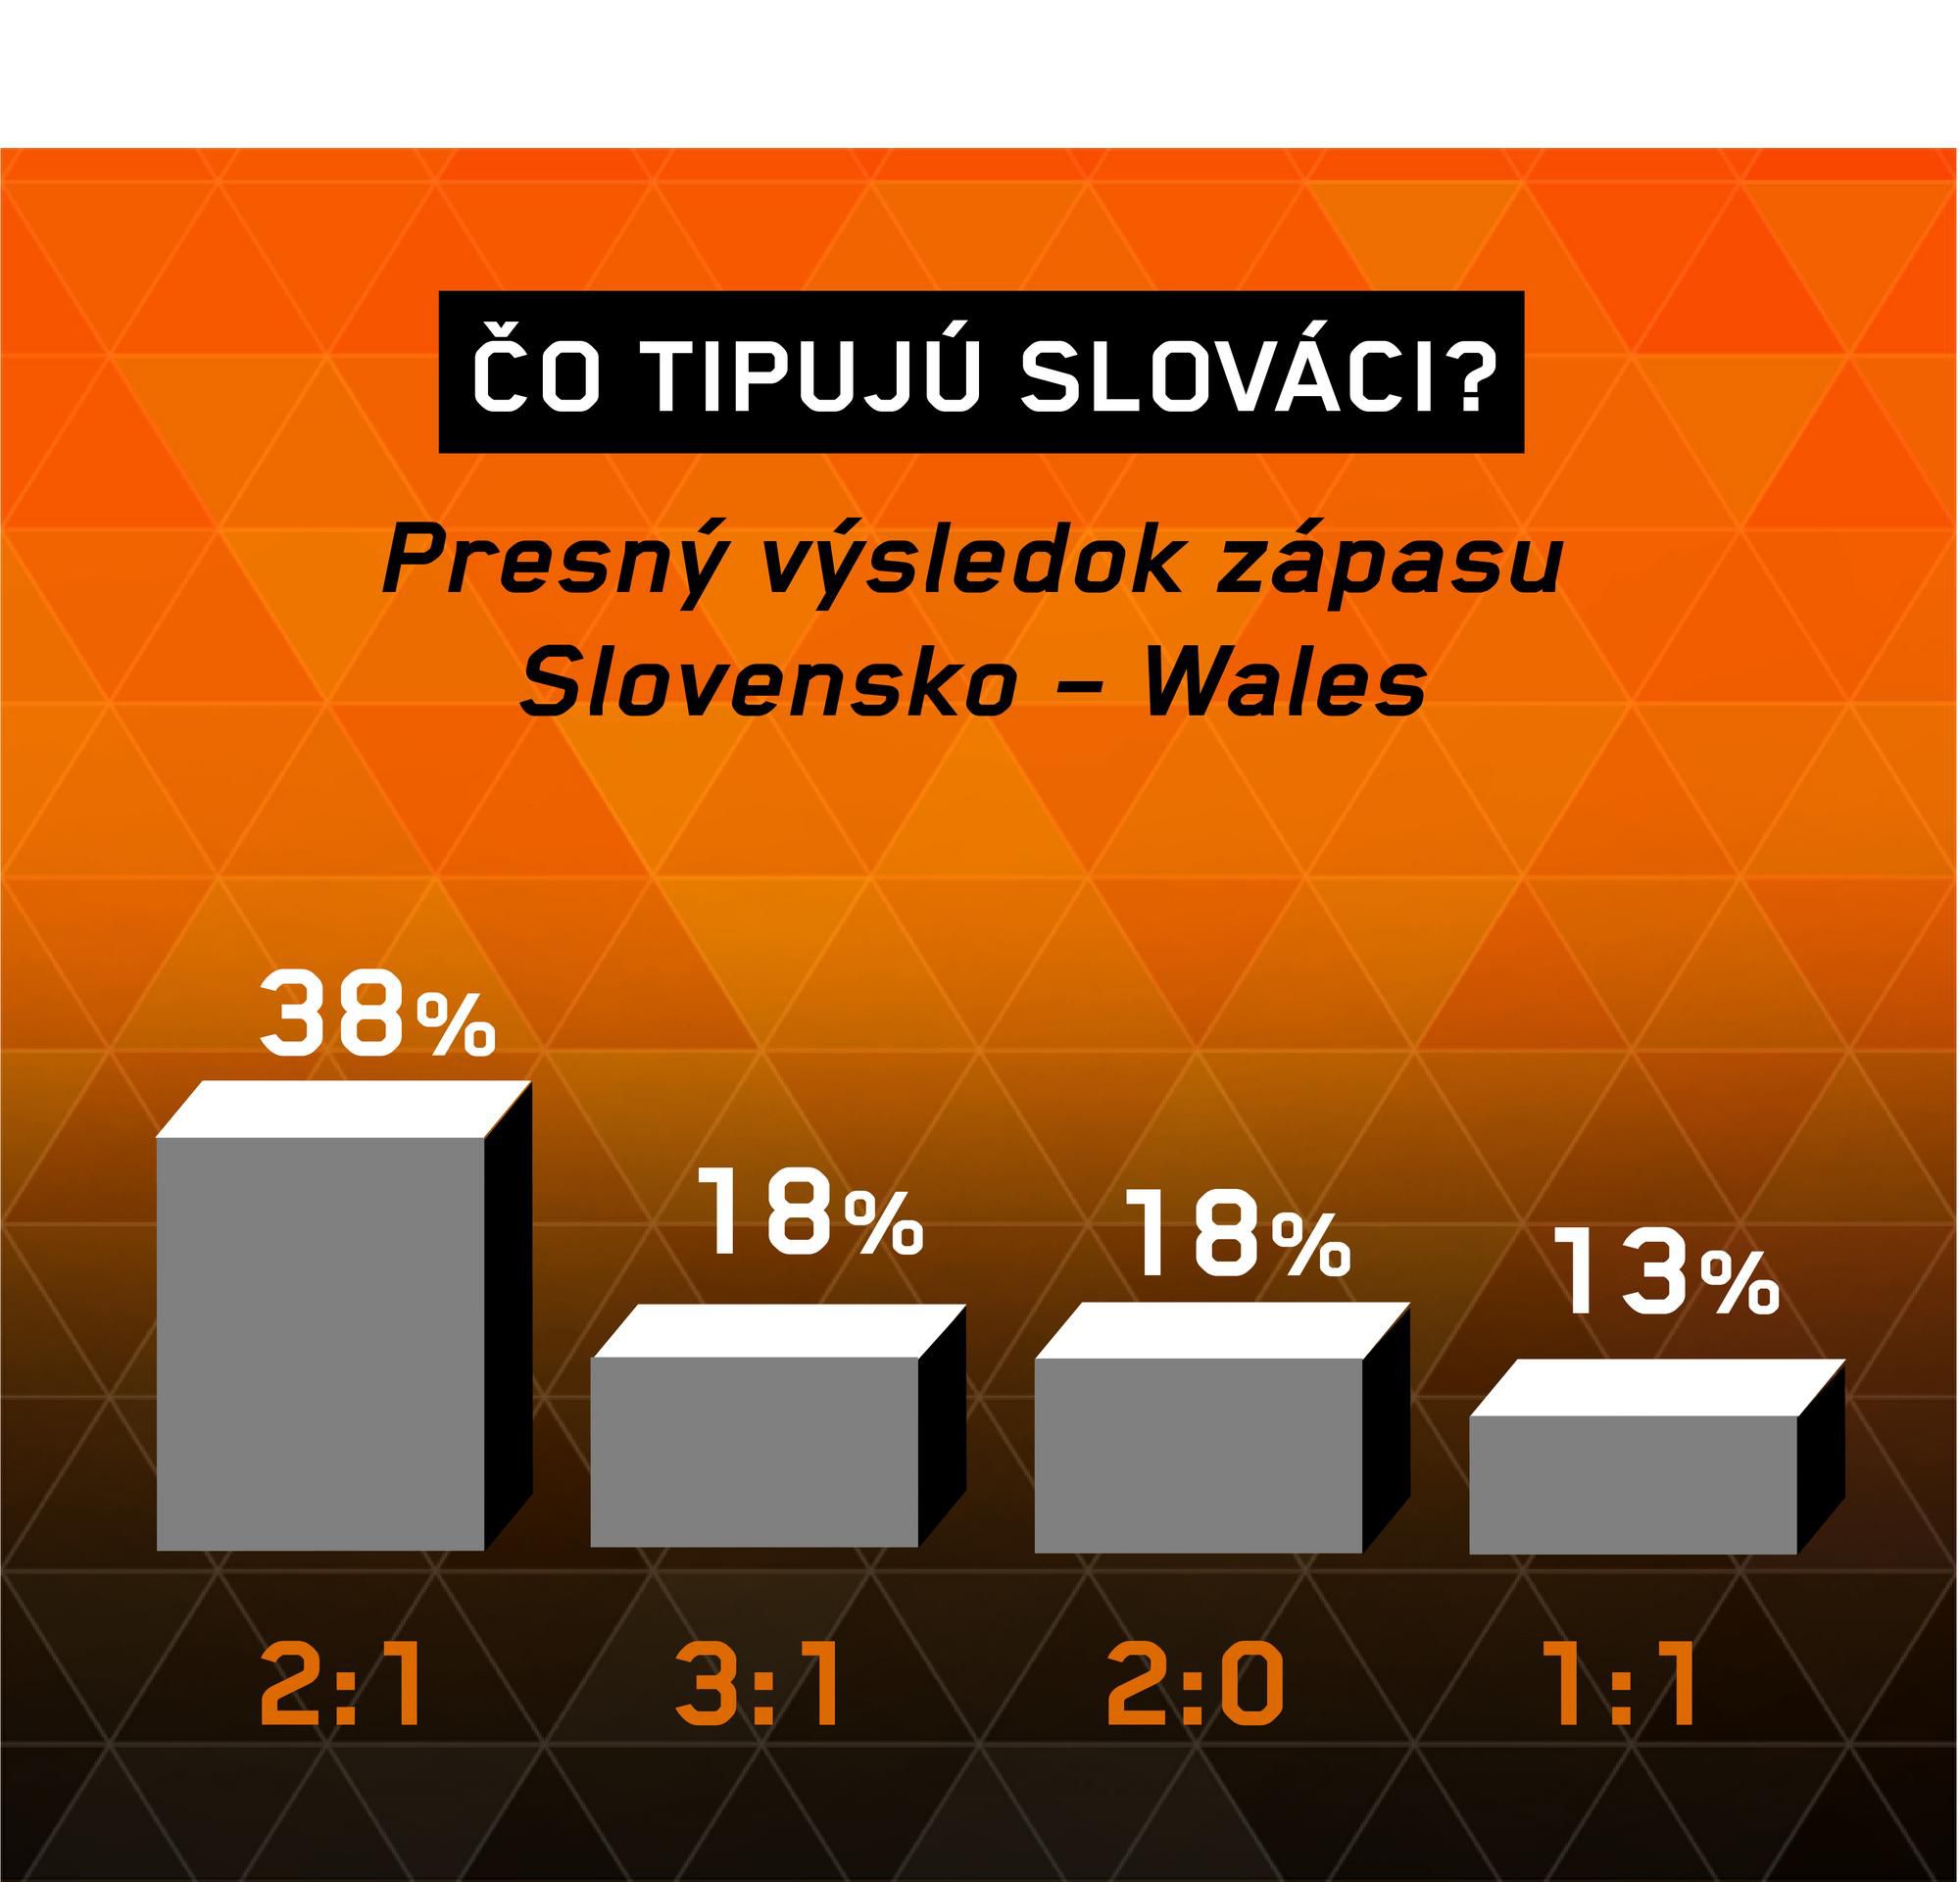 Slovensko - Wales